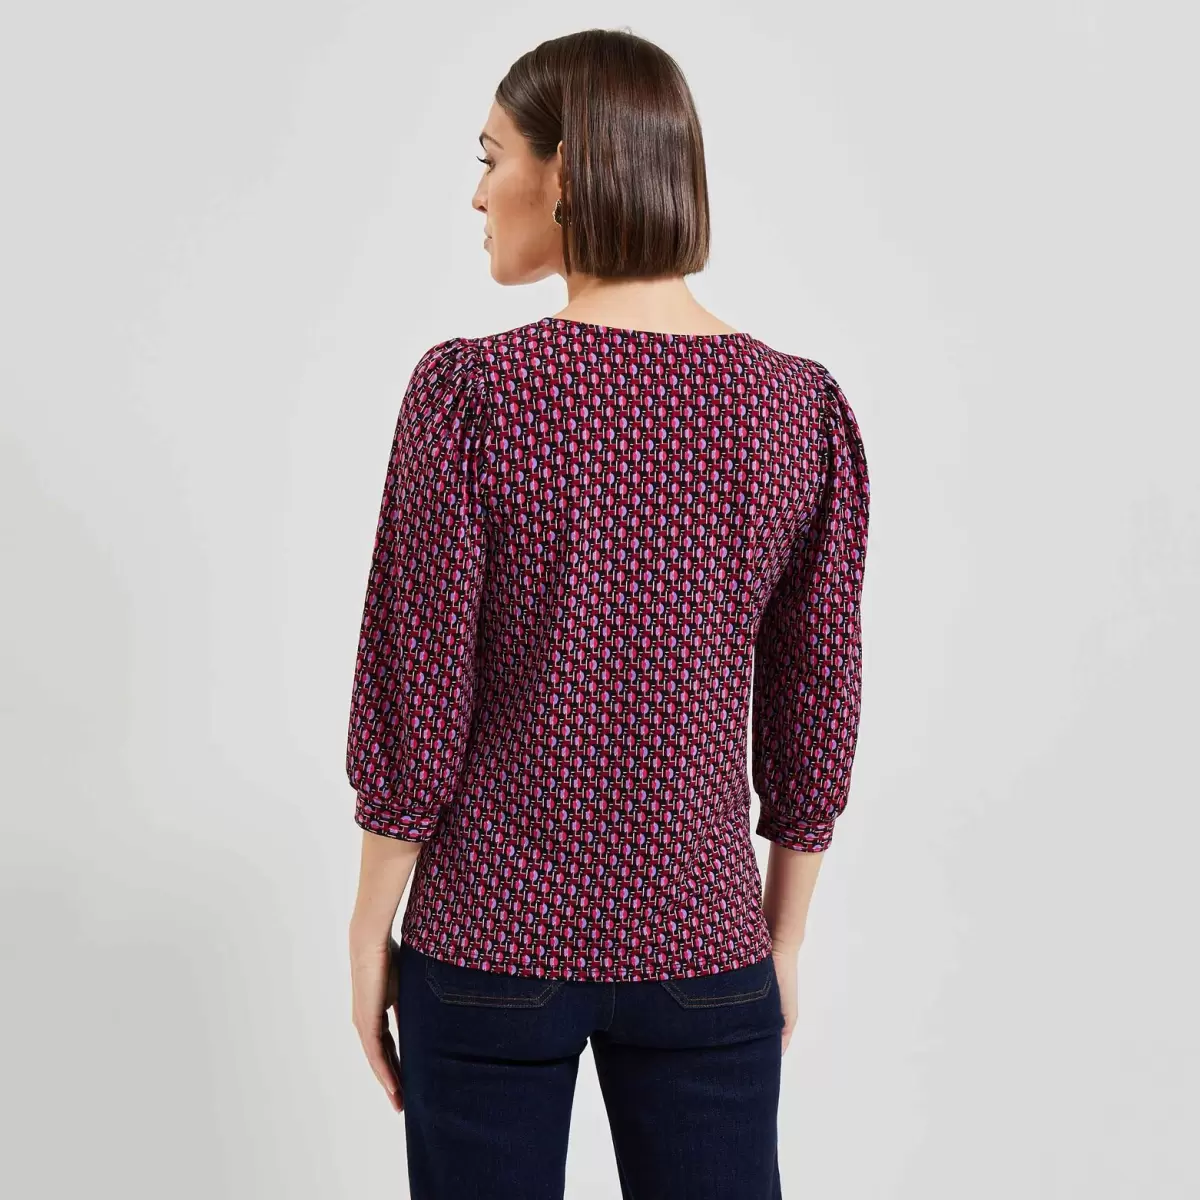 Femme T-Shirts & Tops Rose Tshirt Imprimé Manches Bouffantes Femme Économique Grain De Malic - 1